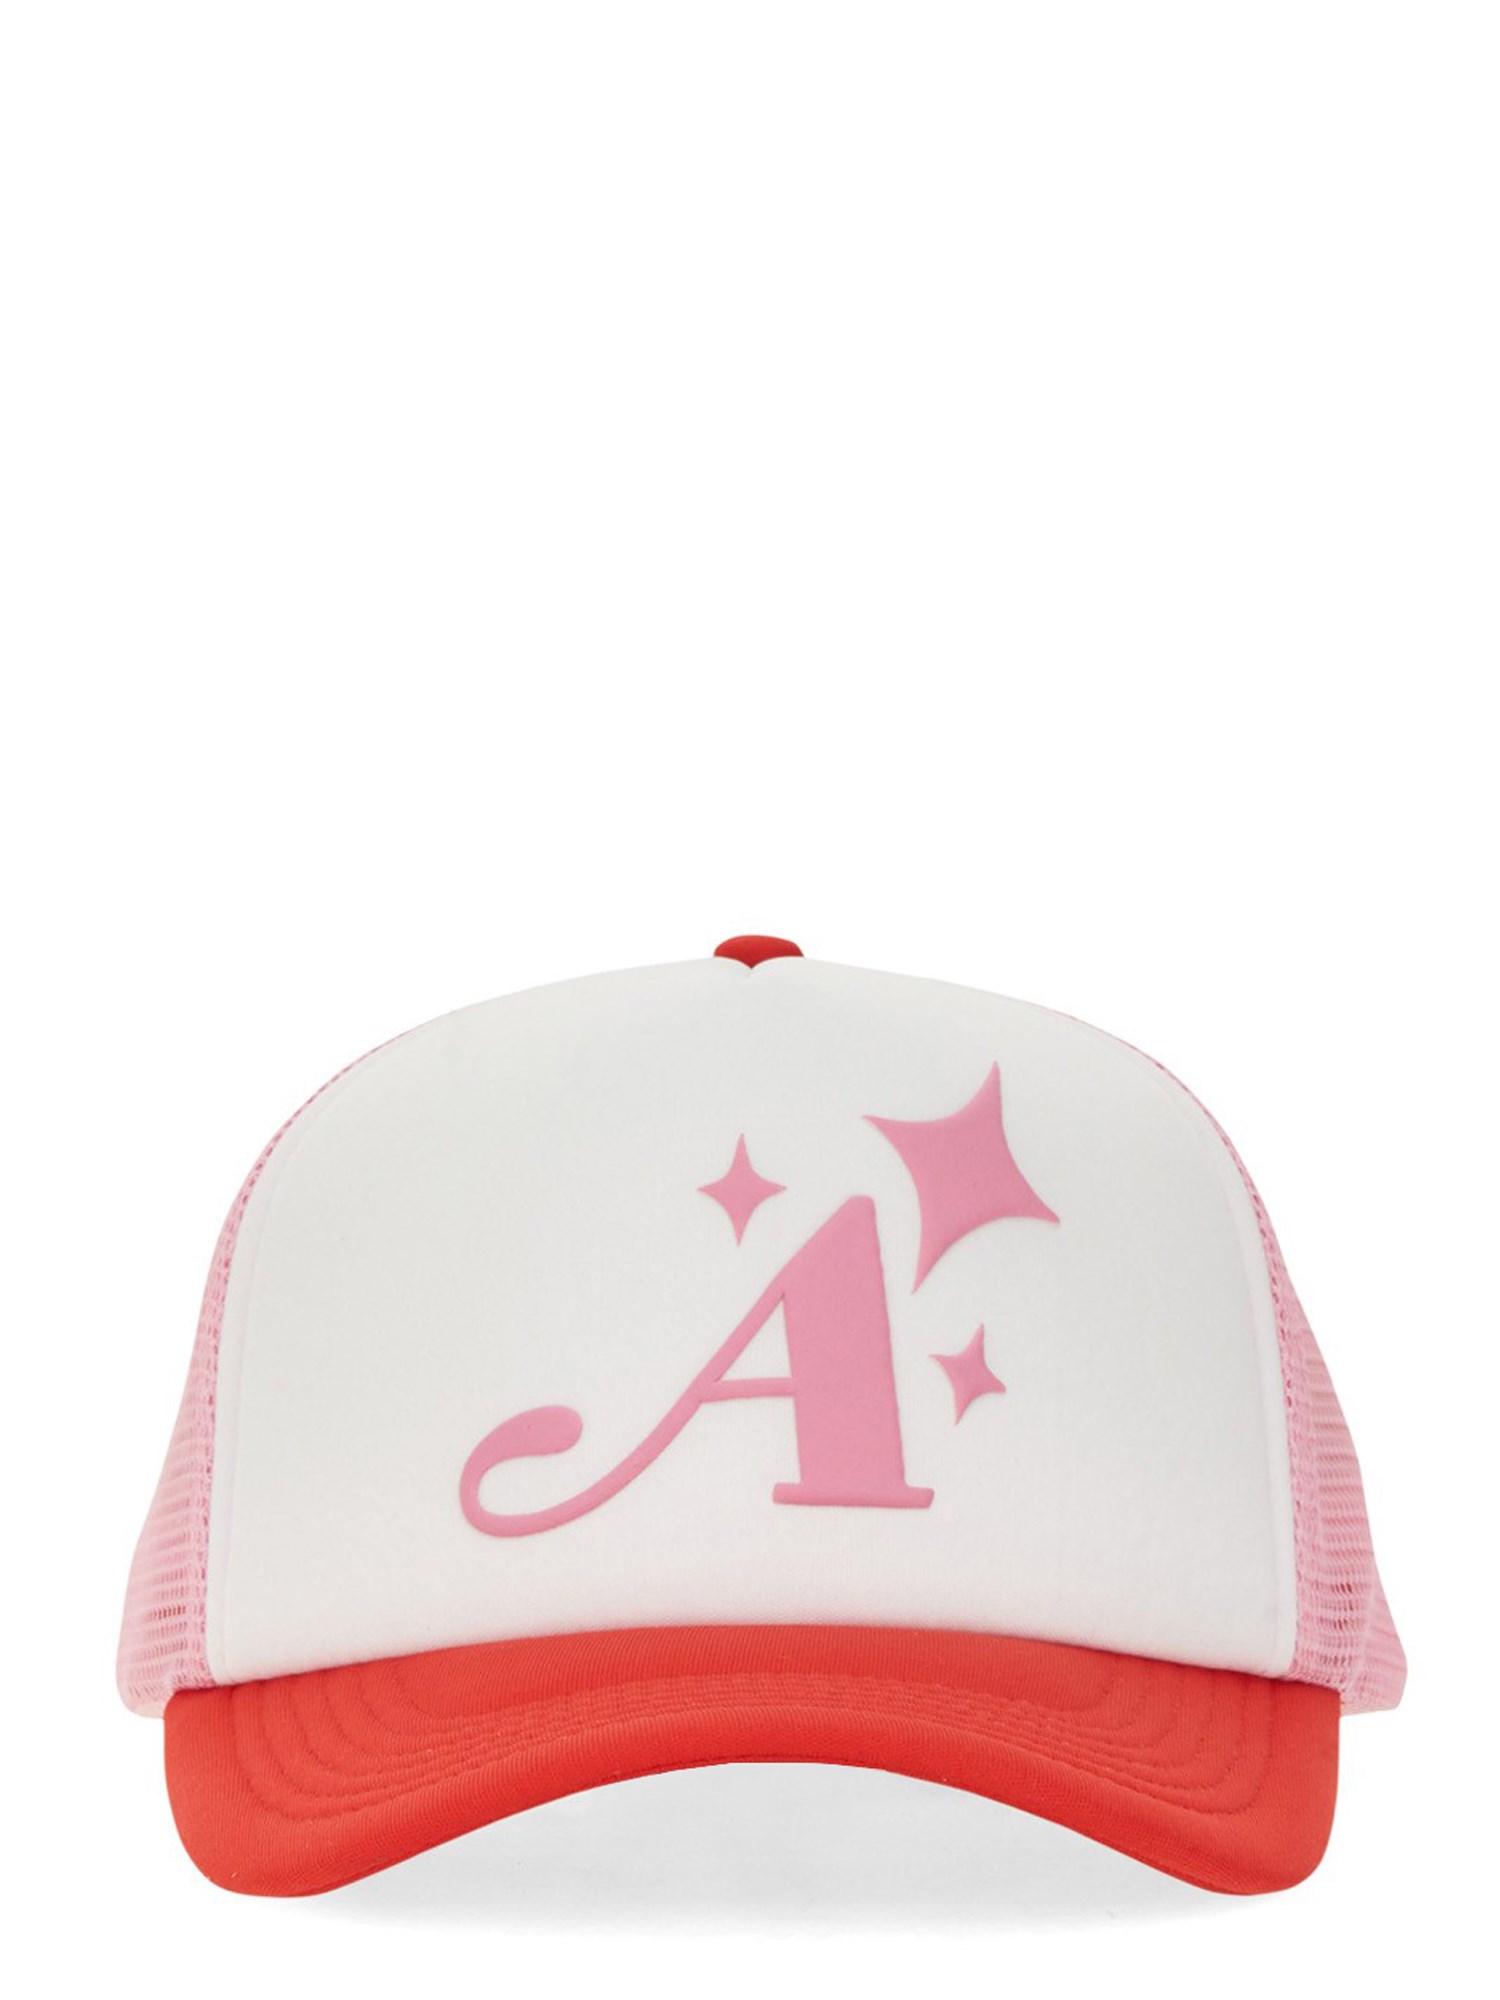 Awake Ny awake ny baseball hat with logo